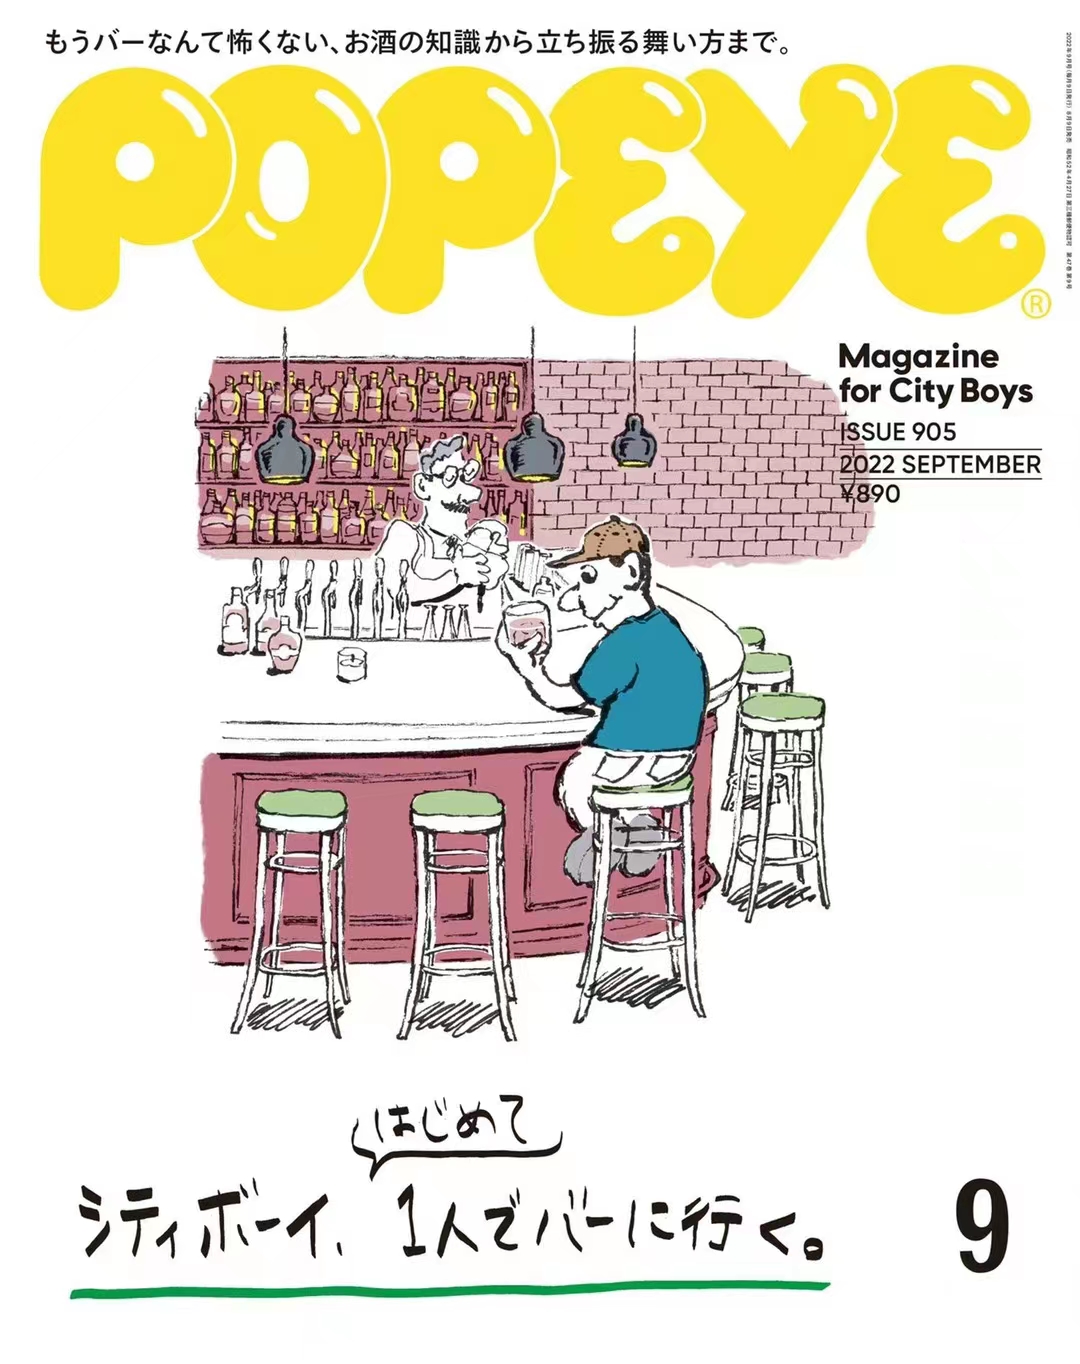 【瑜伽健身上新】 【日本】 004 Popeye 2022年09月 日本时尚男士服装搭配穿搭杂